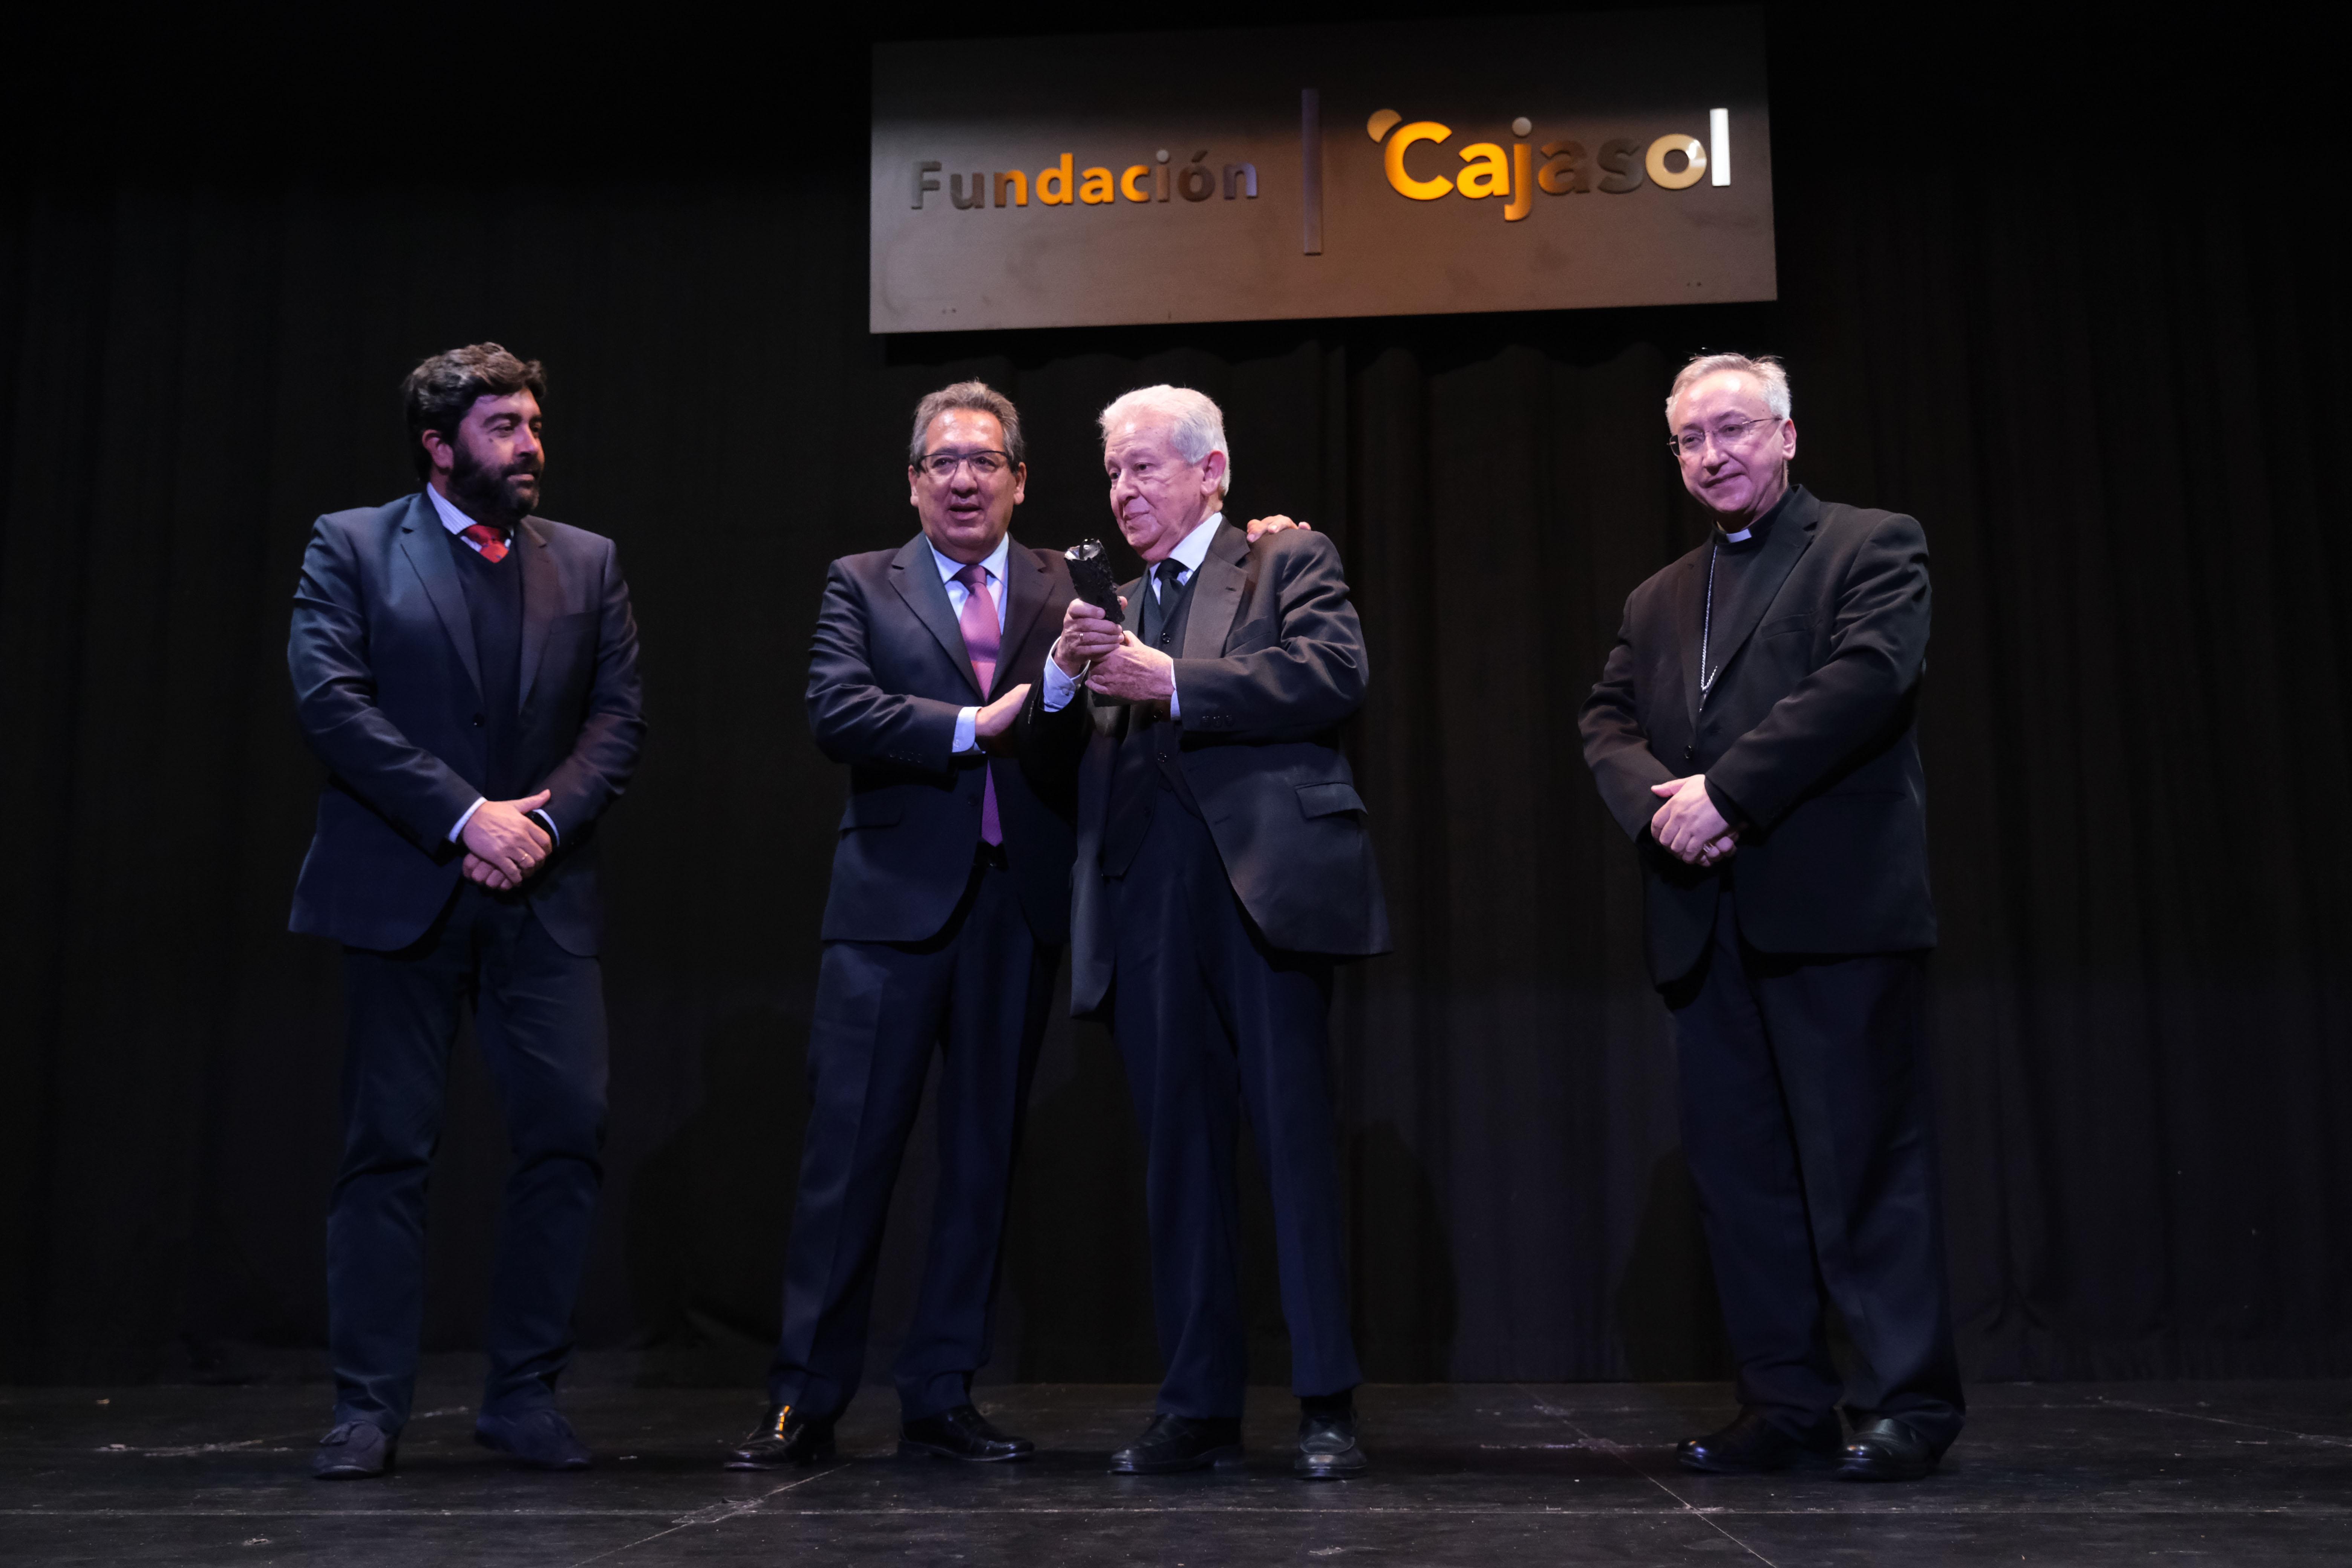 ﻿La Fundación Cajasol entregó el premio “Gota a Gota” al periodista Andrés Cañadas Machado